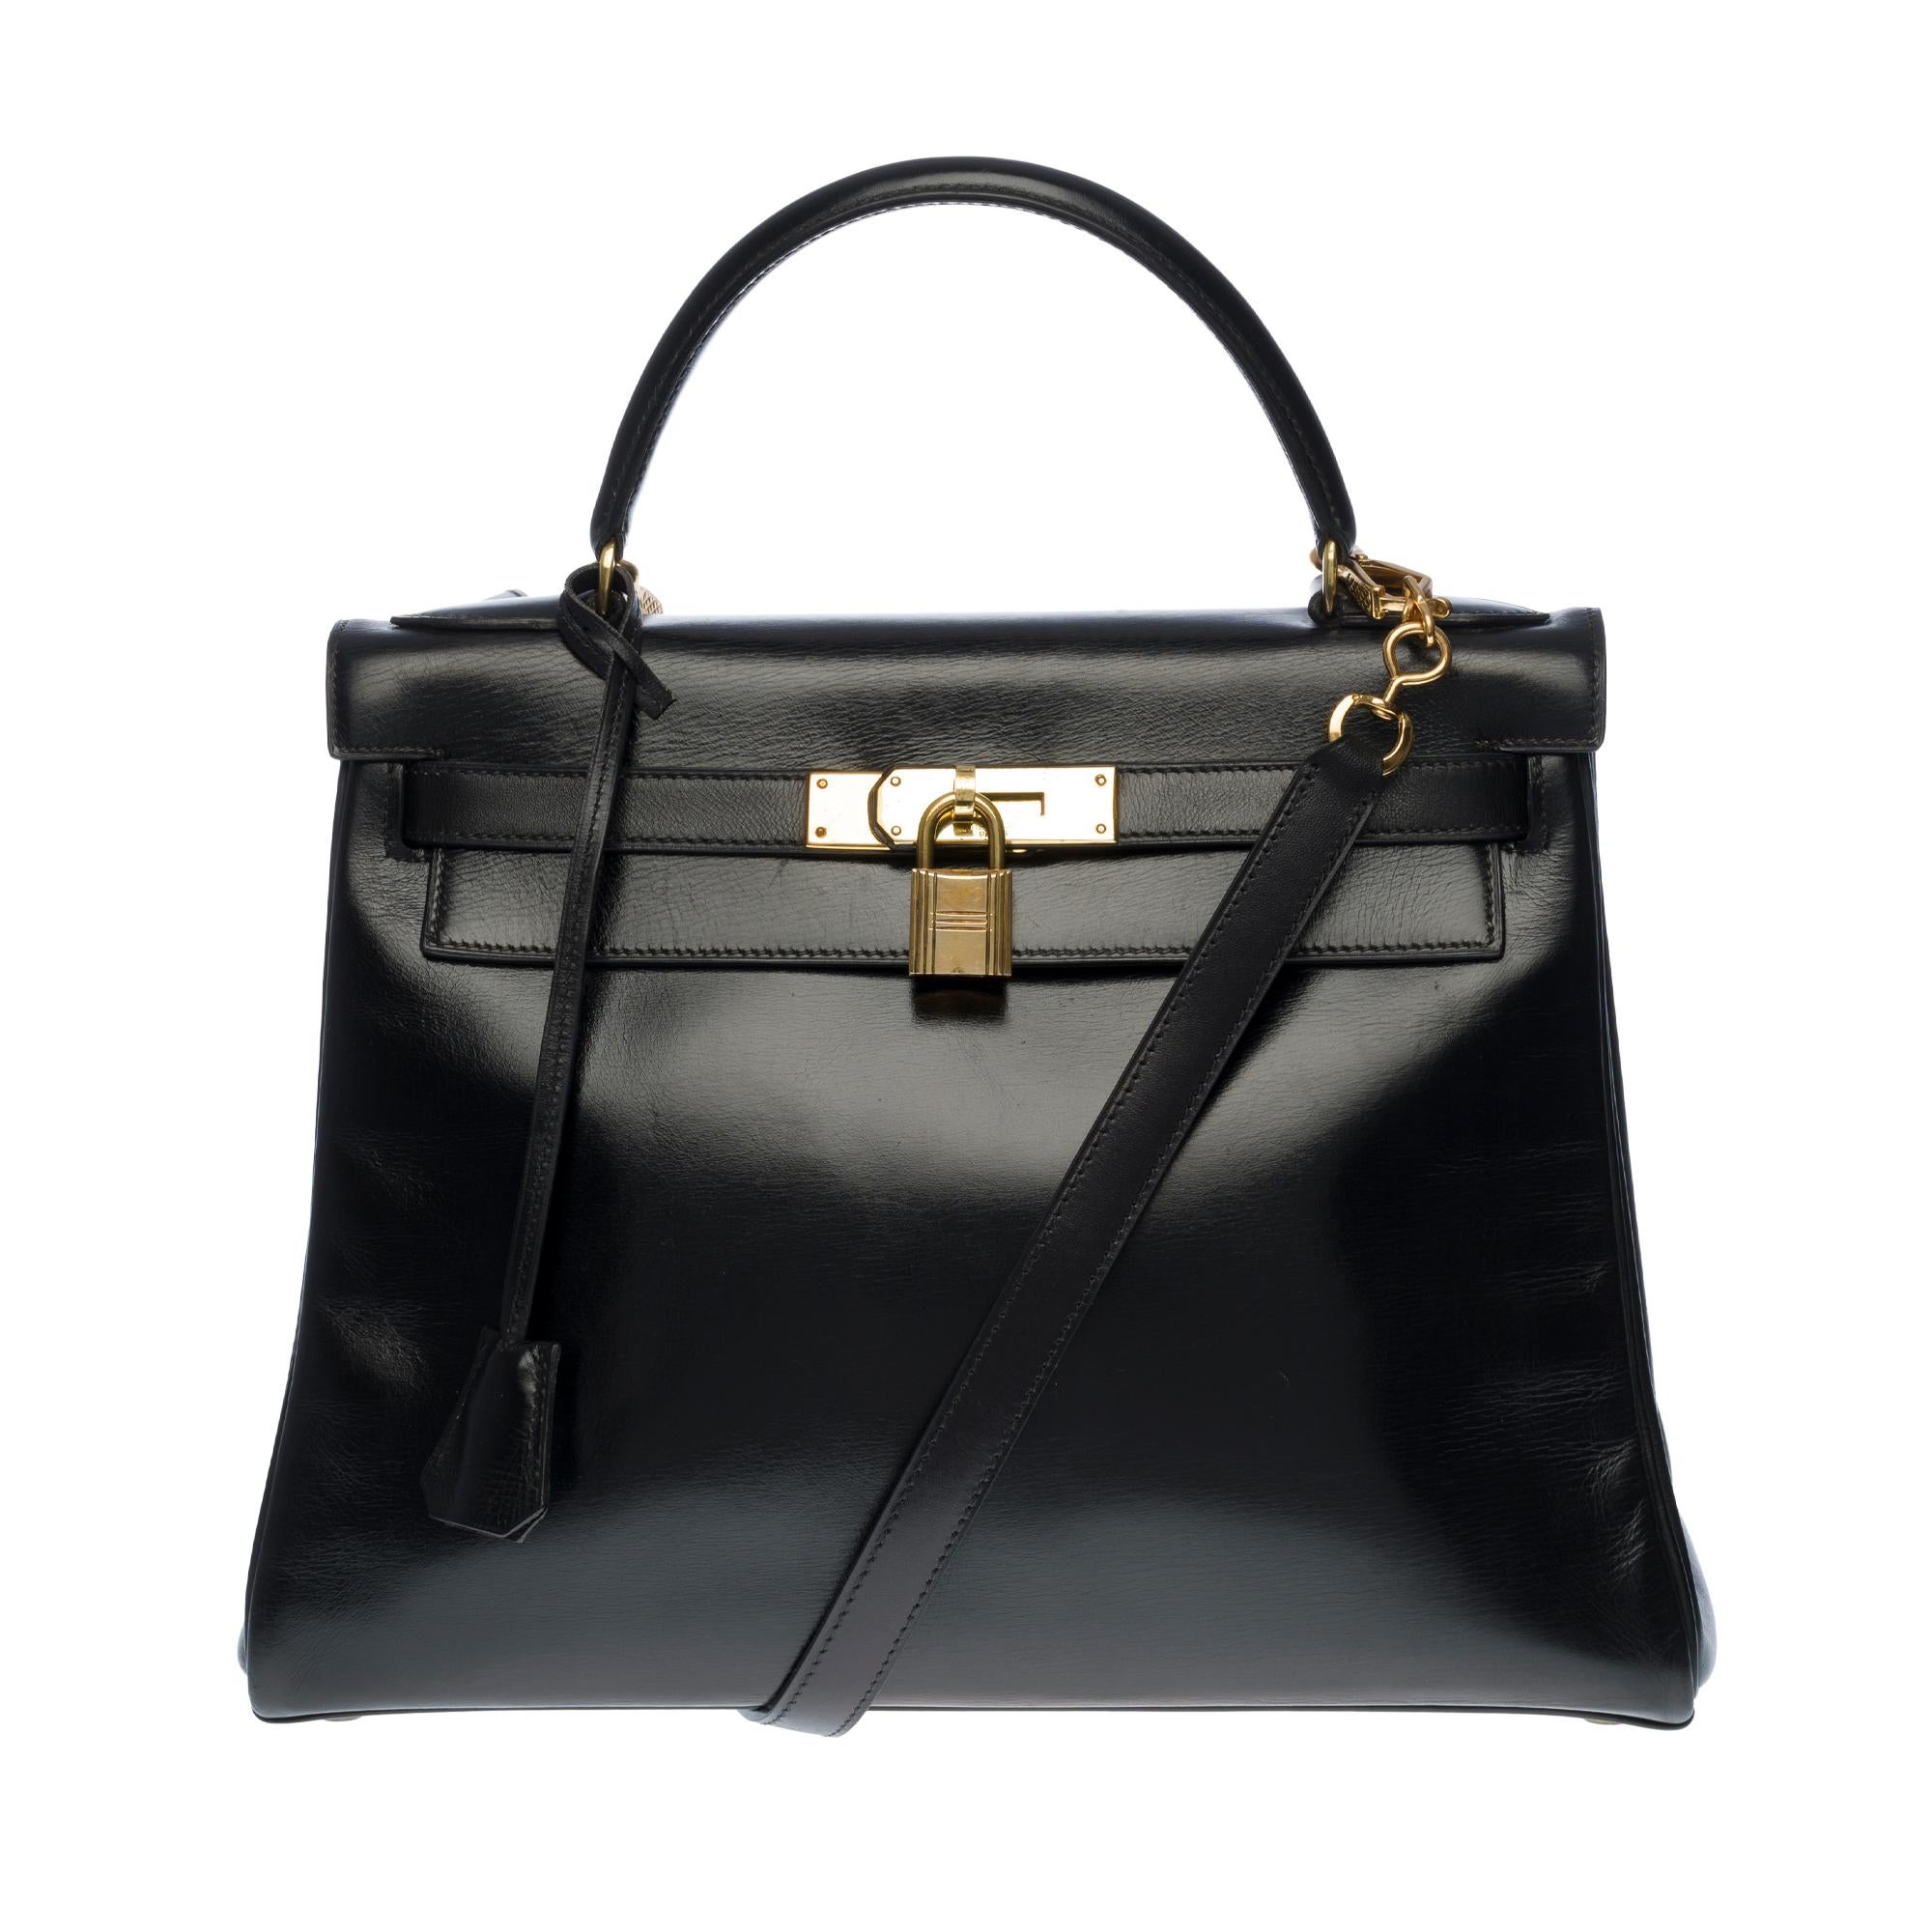 Hermès Kelly 28cm shoulder bag with strap in black calfskin and gold hardware